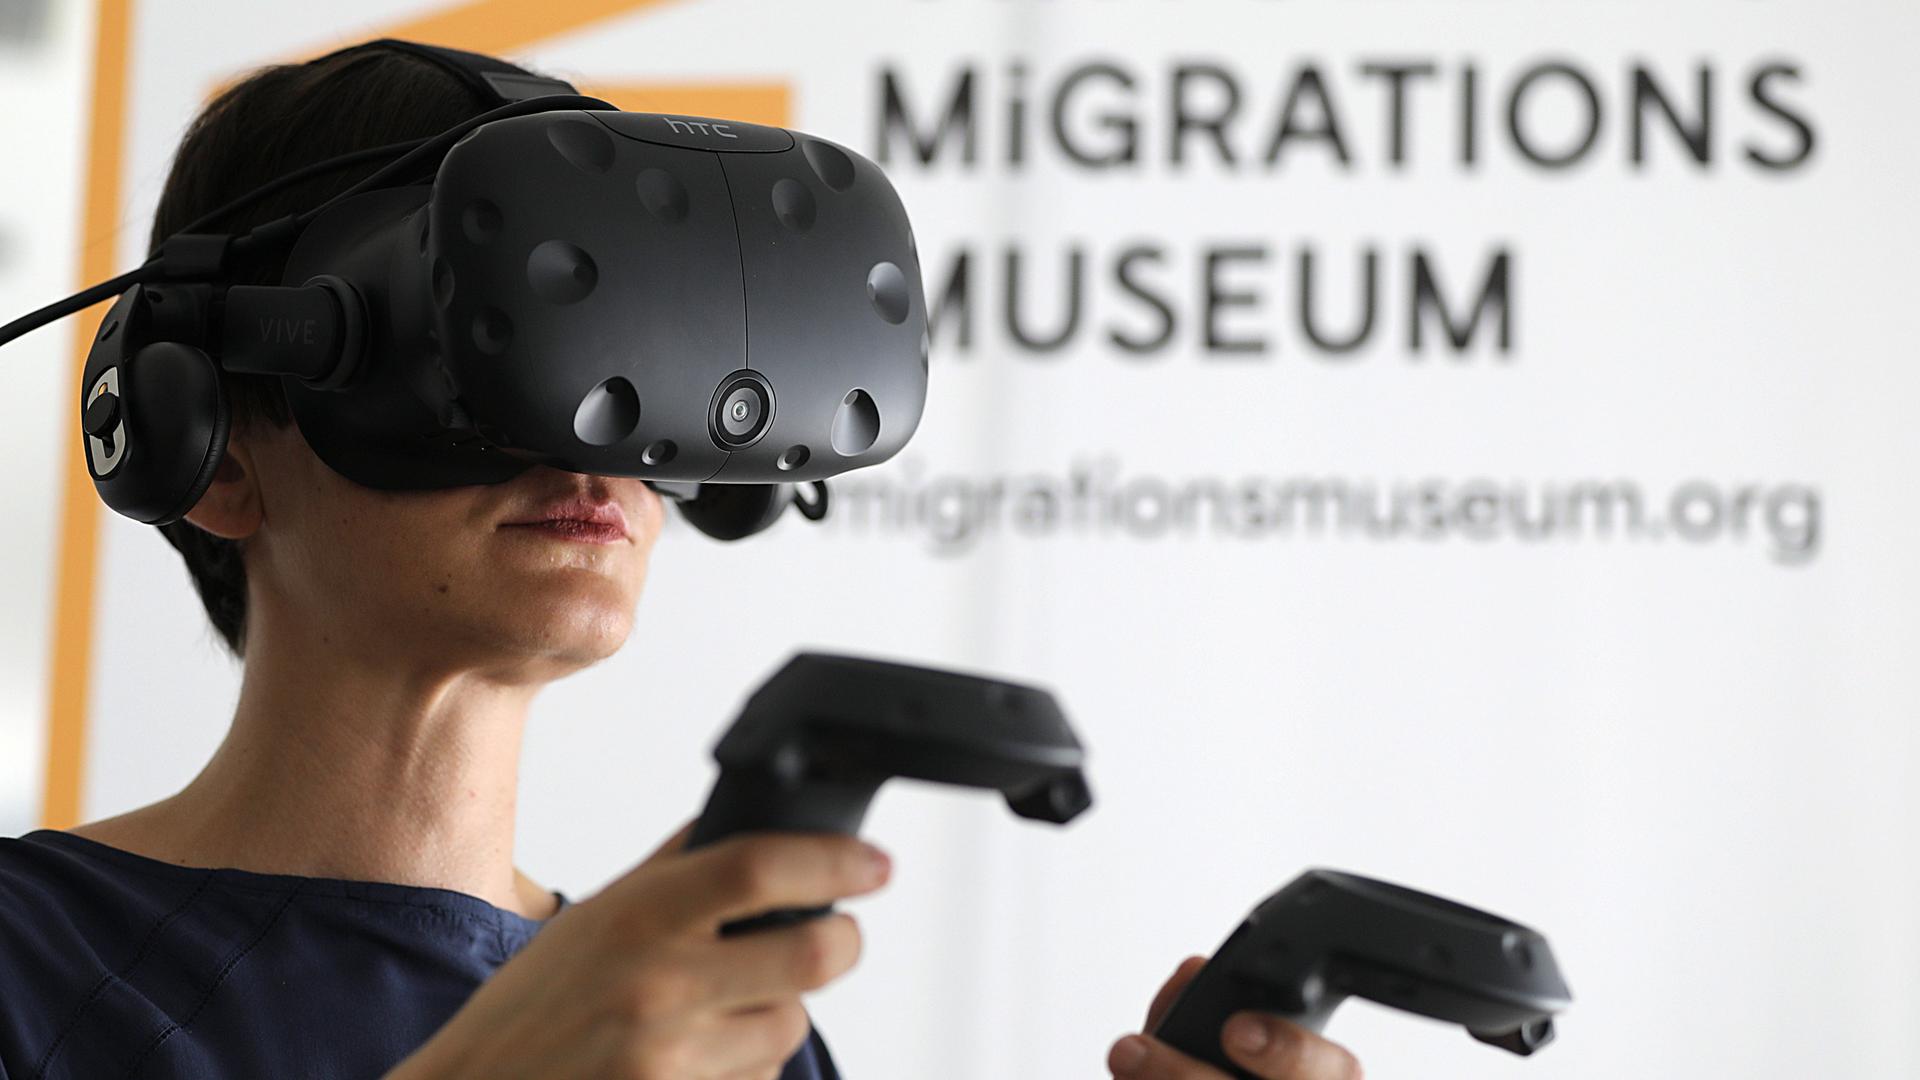 Eine Mitarbeiterin steht mit einer VR-Brille im Virtuellen Migrationsmuseum in Köln. Besucher des Museums können sich anhand digitaler Straßenszenen, Gebäuden und Objekten mit der Migrationsgeschichte auseinandersetzten. Dafür werden Virtual-Reality-Brillen (VR) genutzt. 